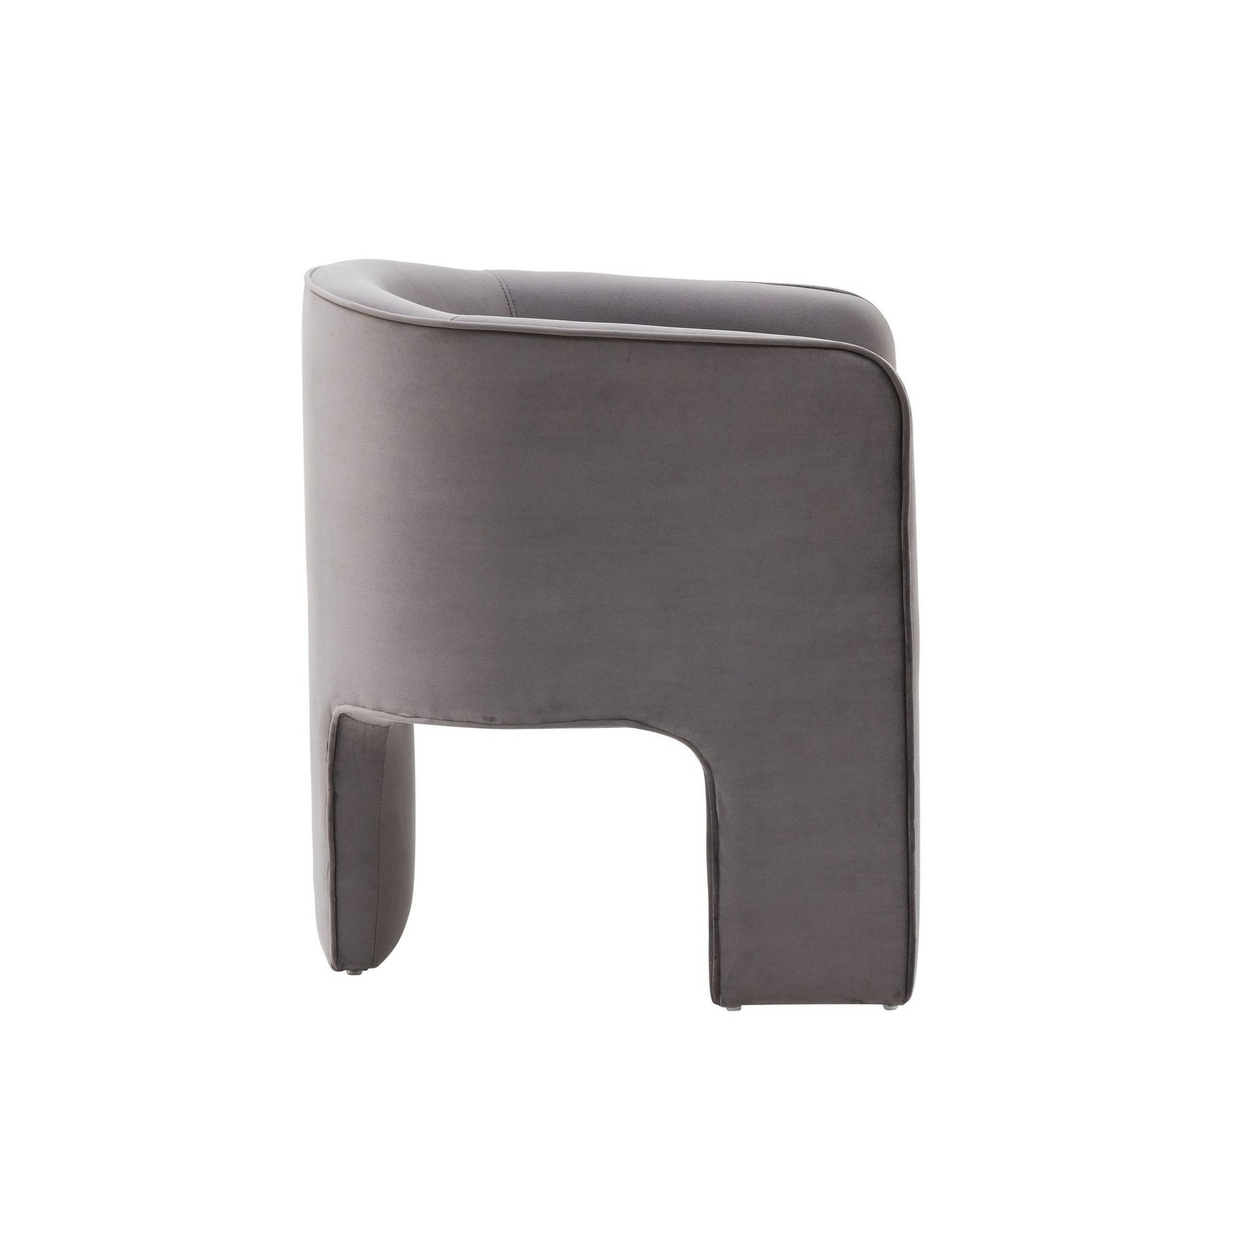 Cid Yen 24 Inch Accent Chair, Gray Velvet, Curved Back, 3 Legged Base - Saltoro Sherpi